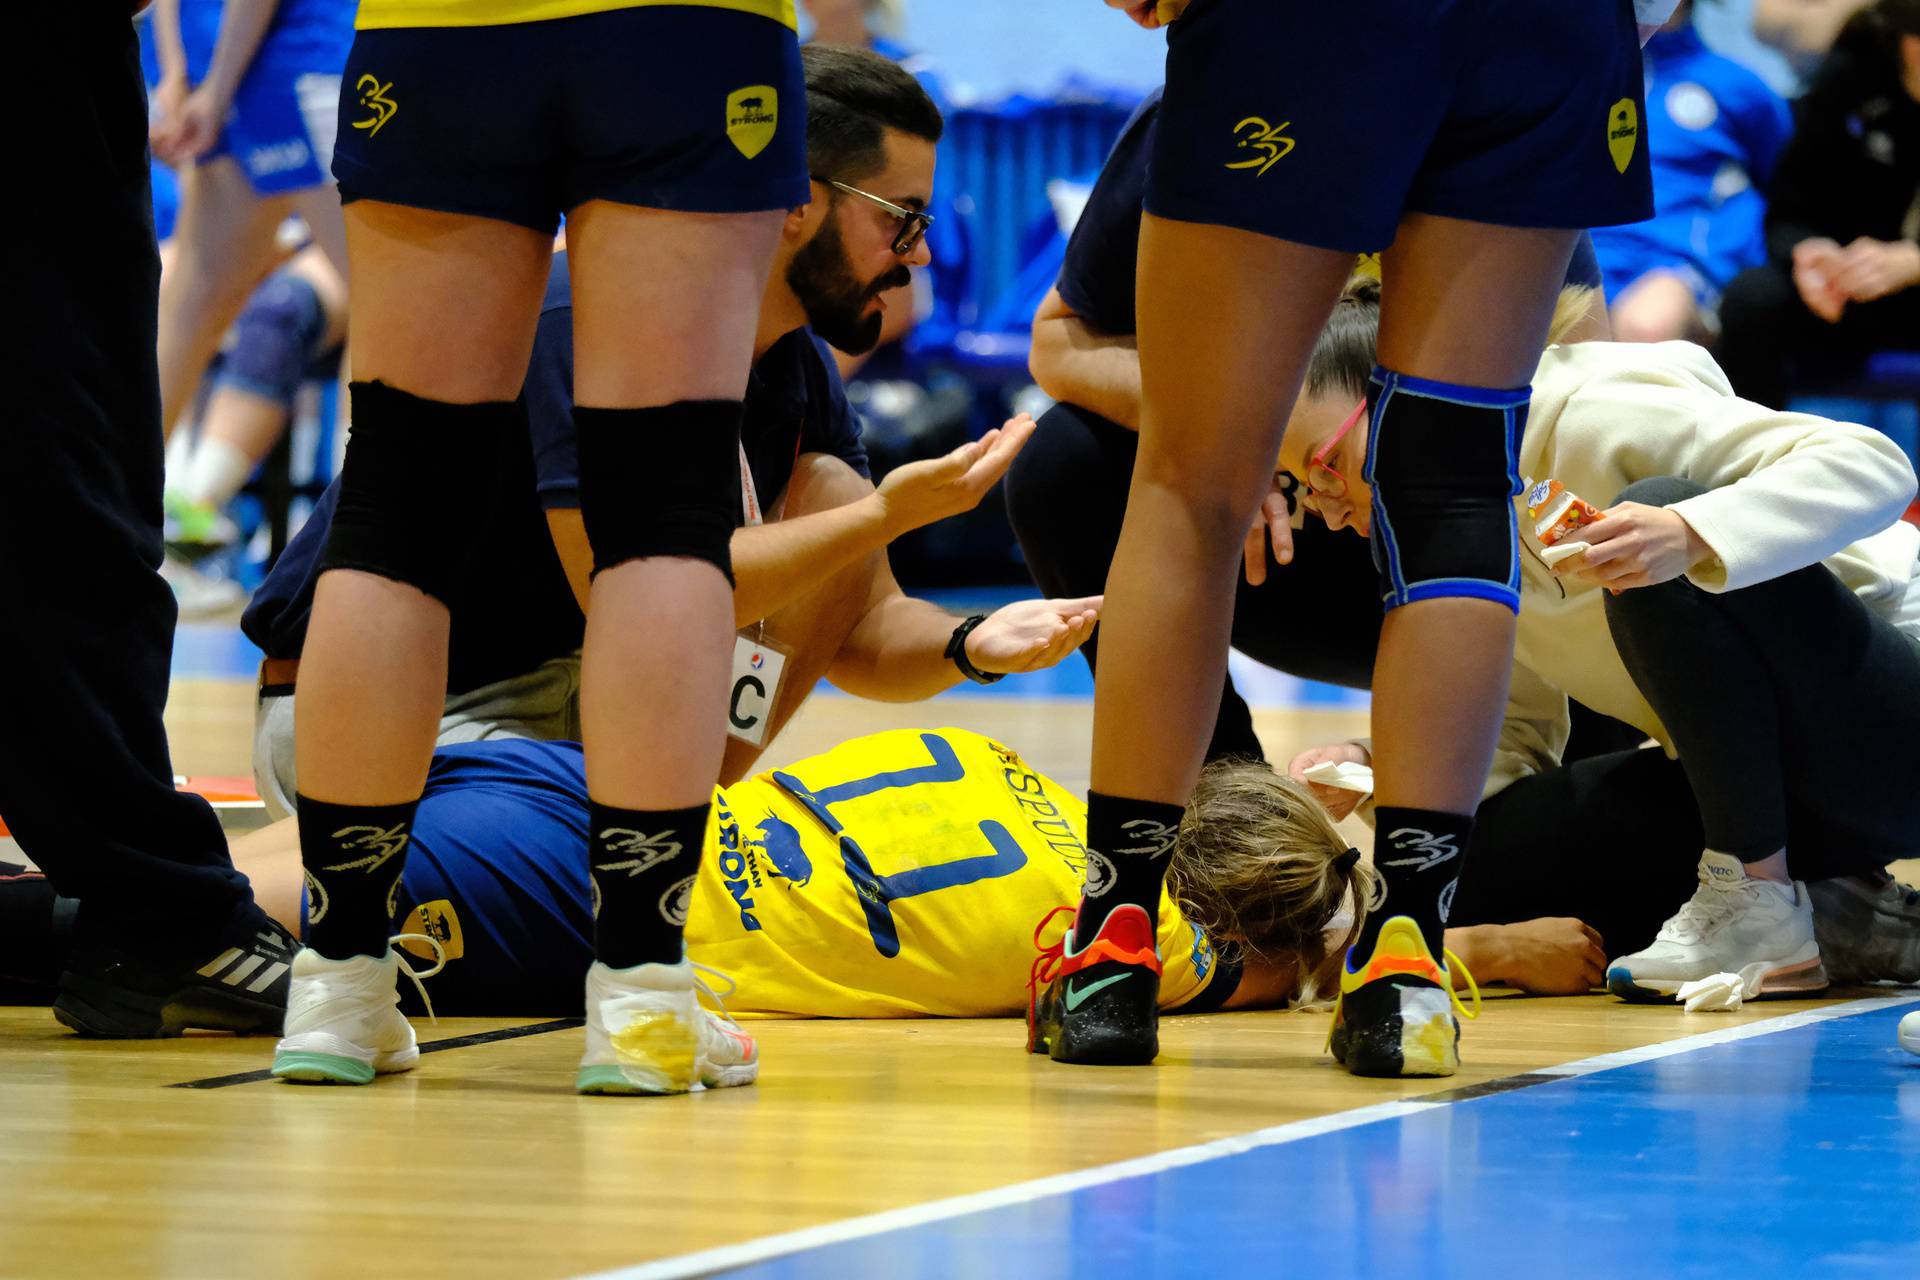 Rukometašica nepomično leži nakon ozljede na utakmici Lokomotiva - Umag